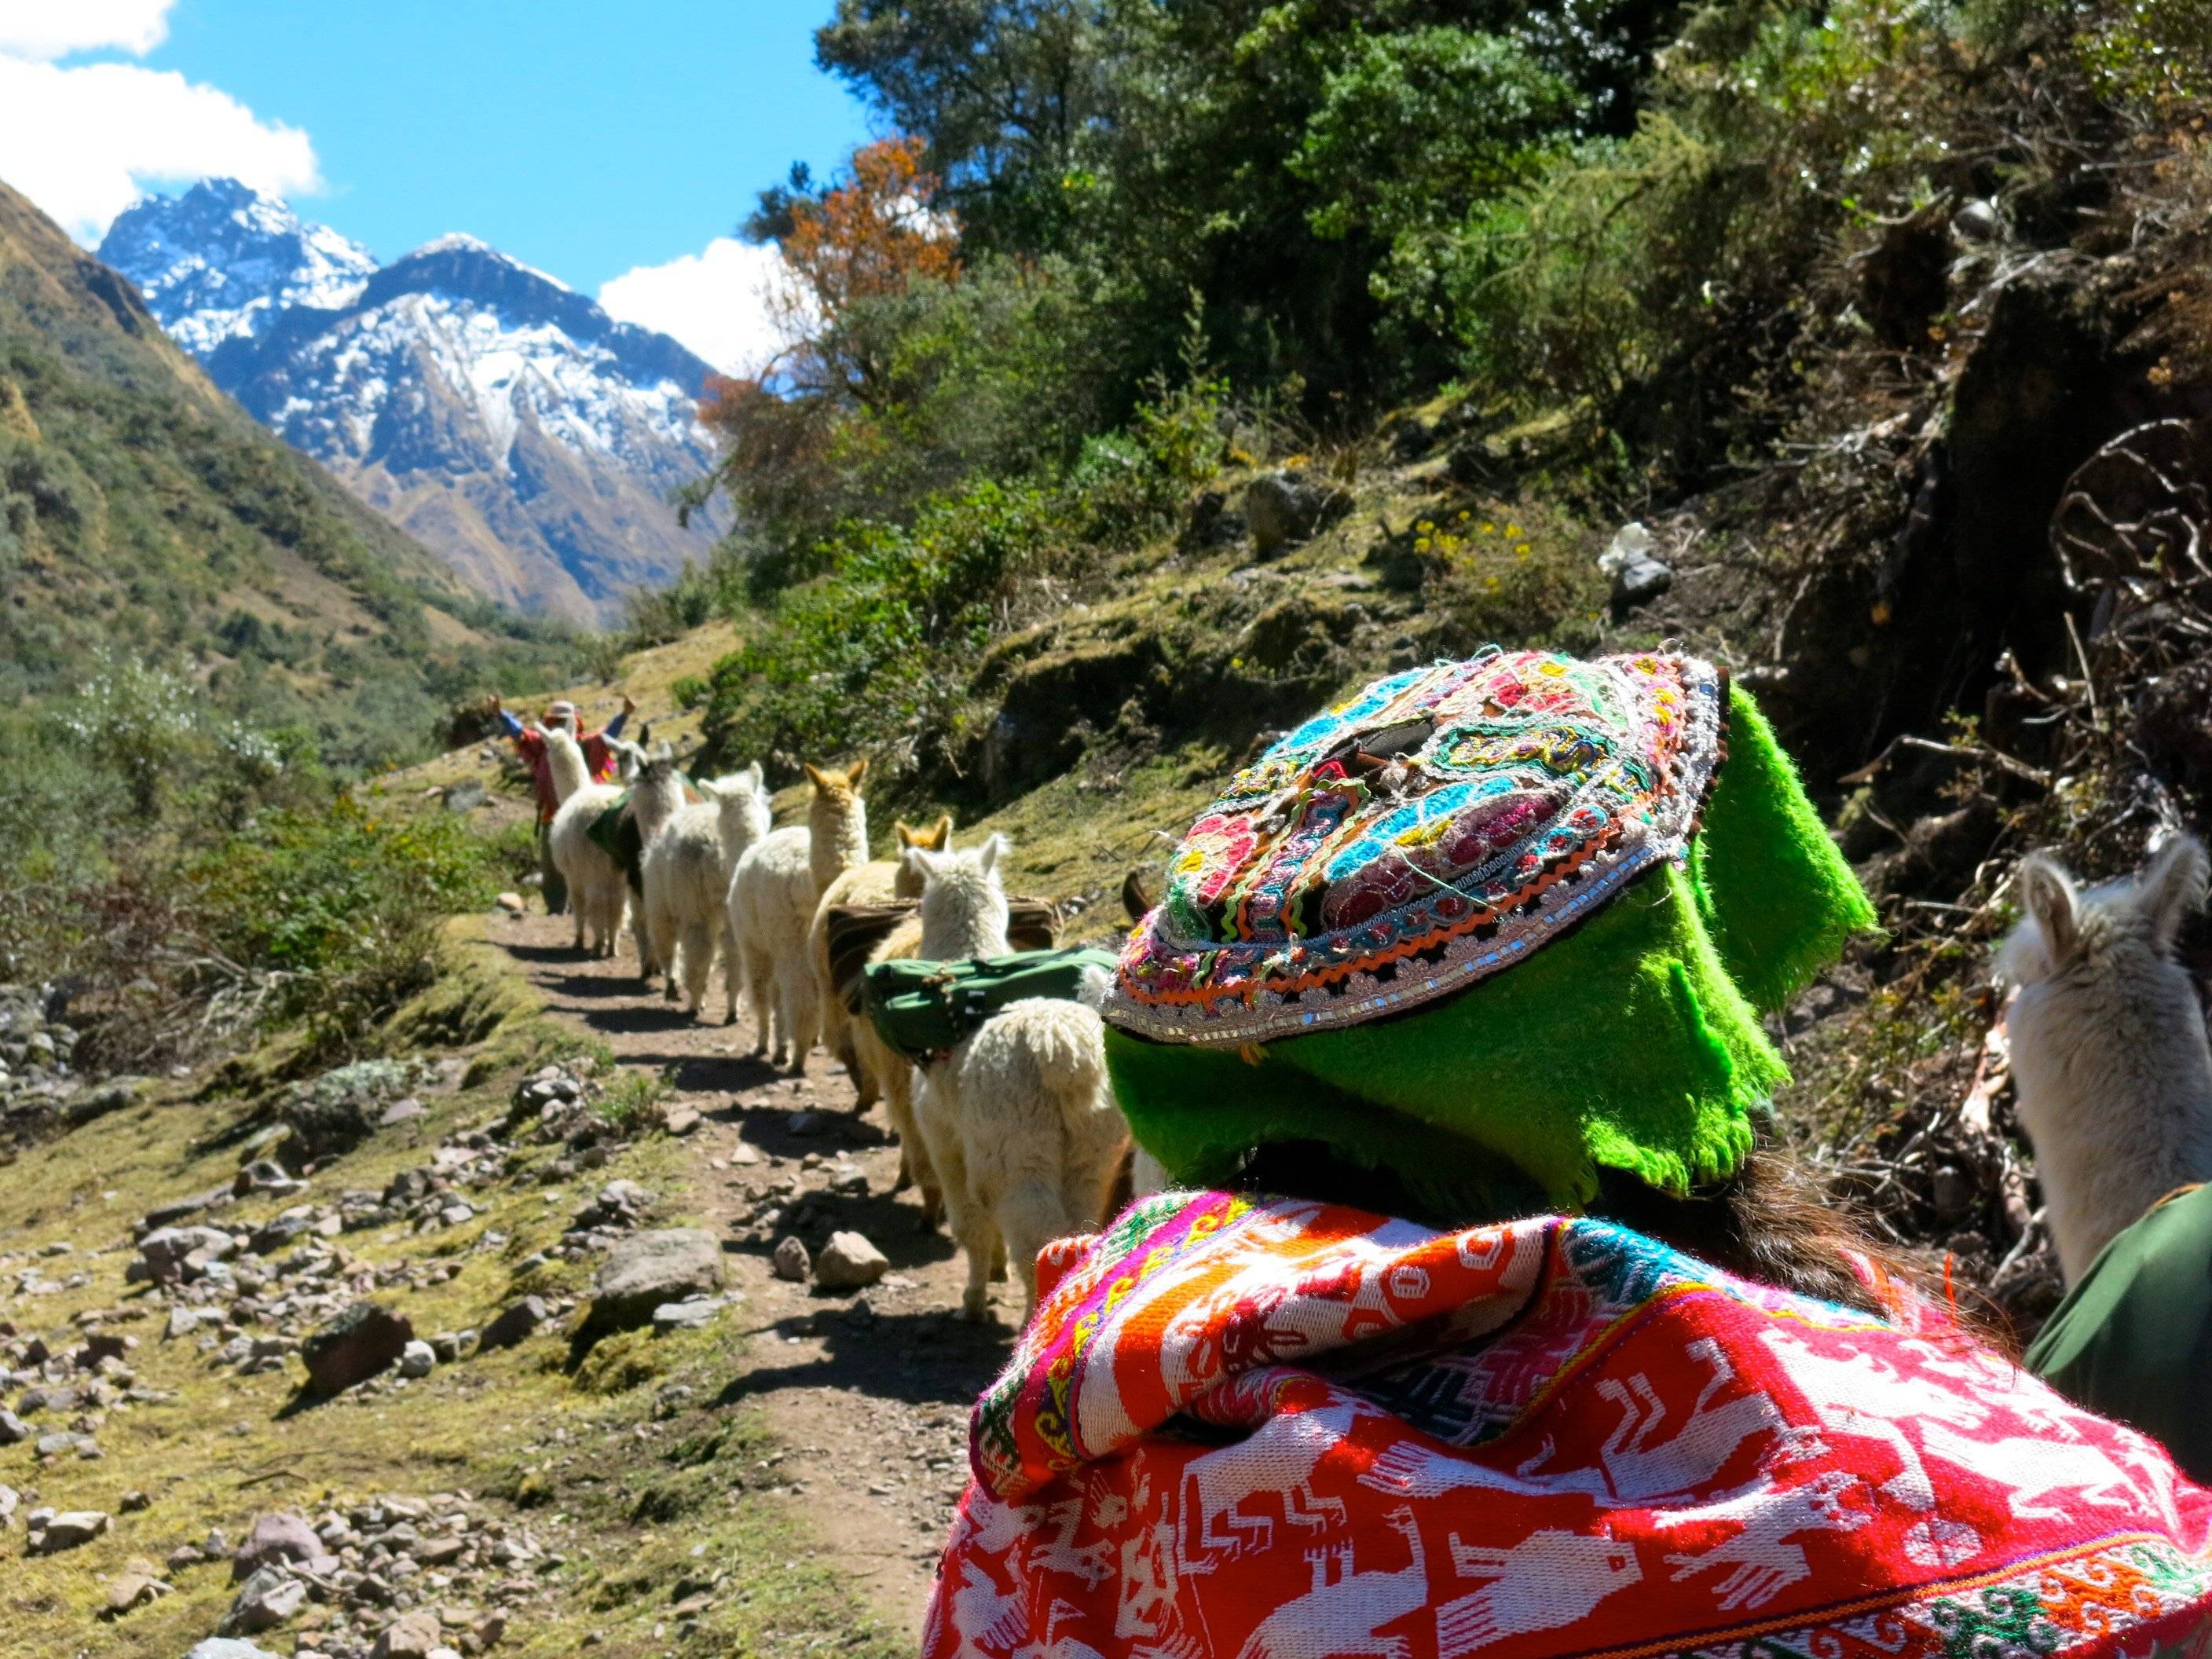 Randonnée solidaire avec des lamas dans la vallée sacrée des Andes